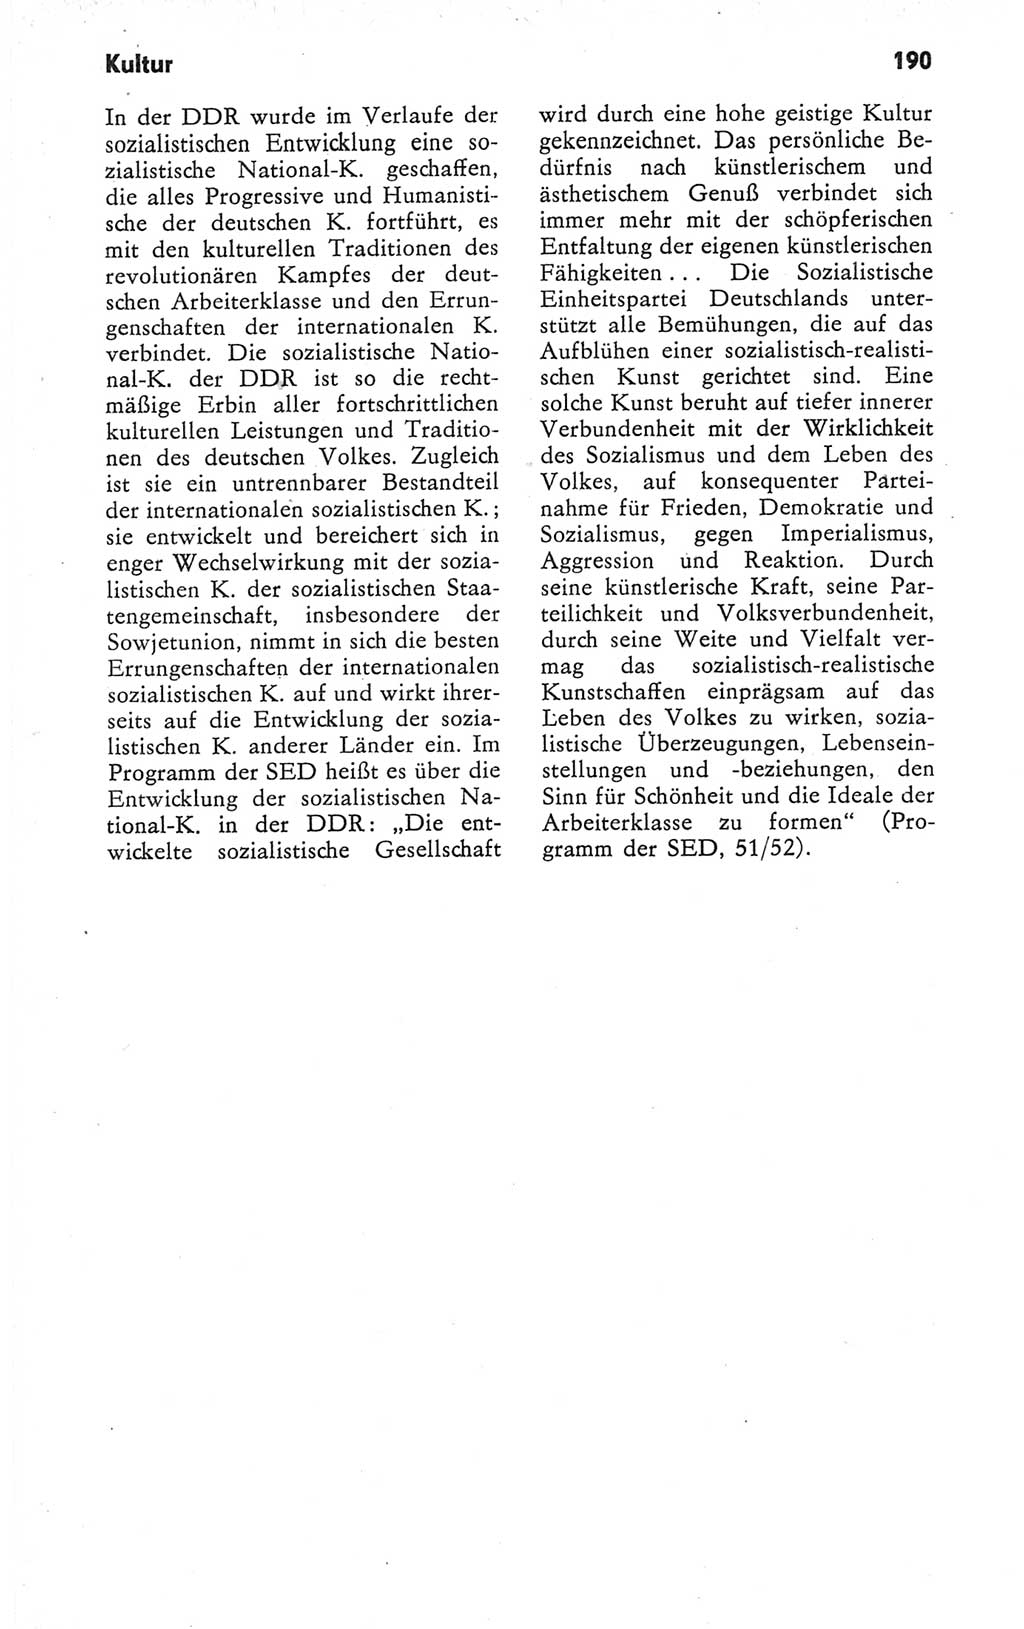 Kleines Wörterbuch der marxistisch-leninistischen Philosophie [Deutsche Demokratische Republik (DDR)] 1979, Seite 190 (Kl. Wb. ML Phil. DDR 1979, S. 190)